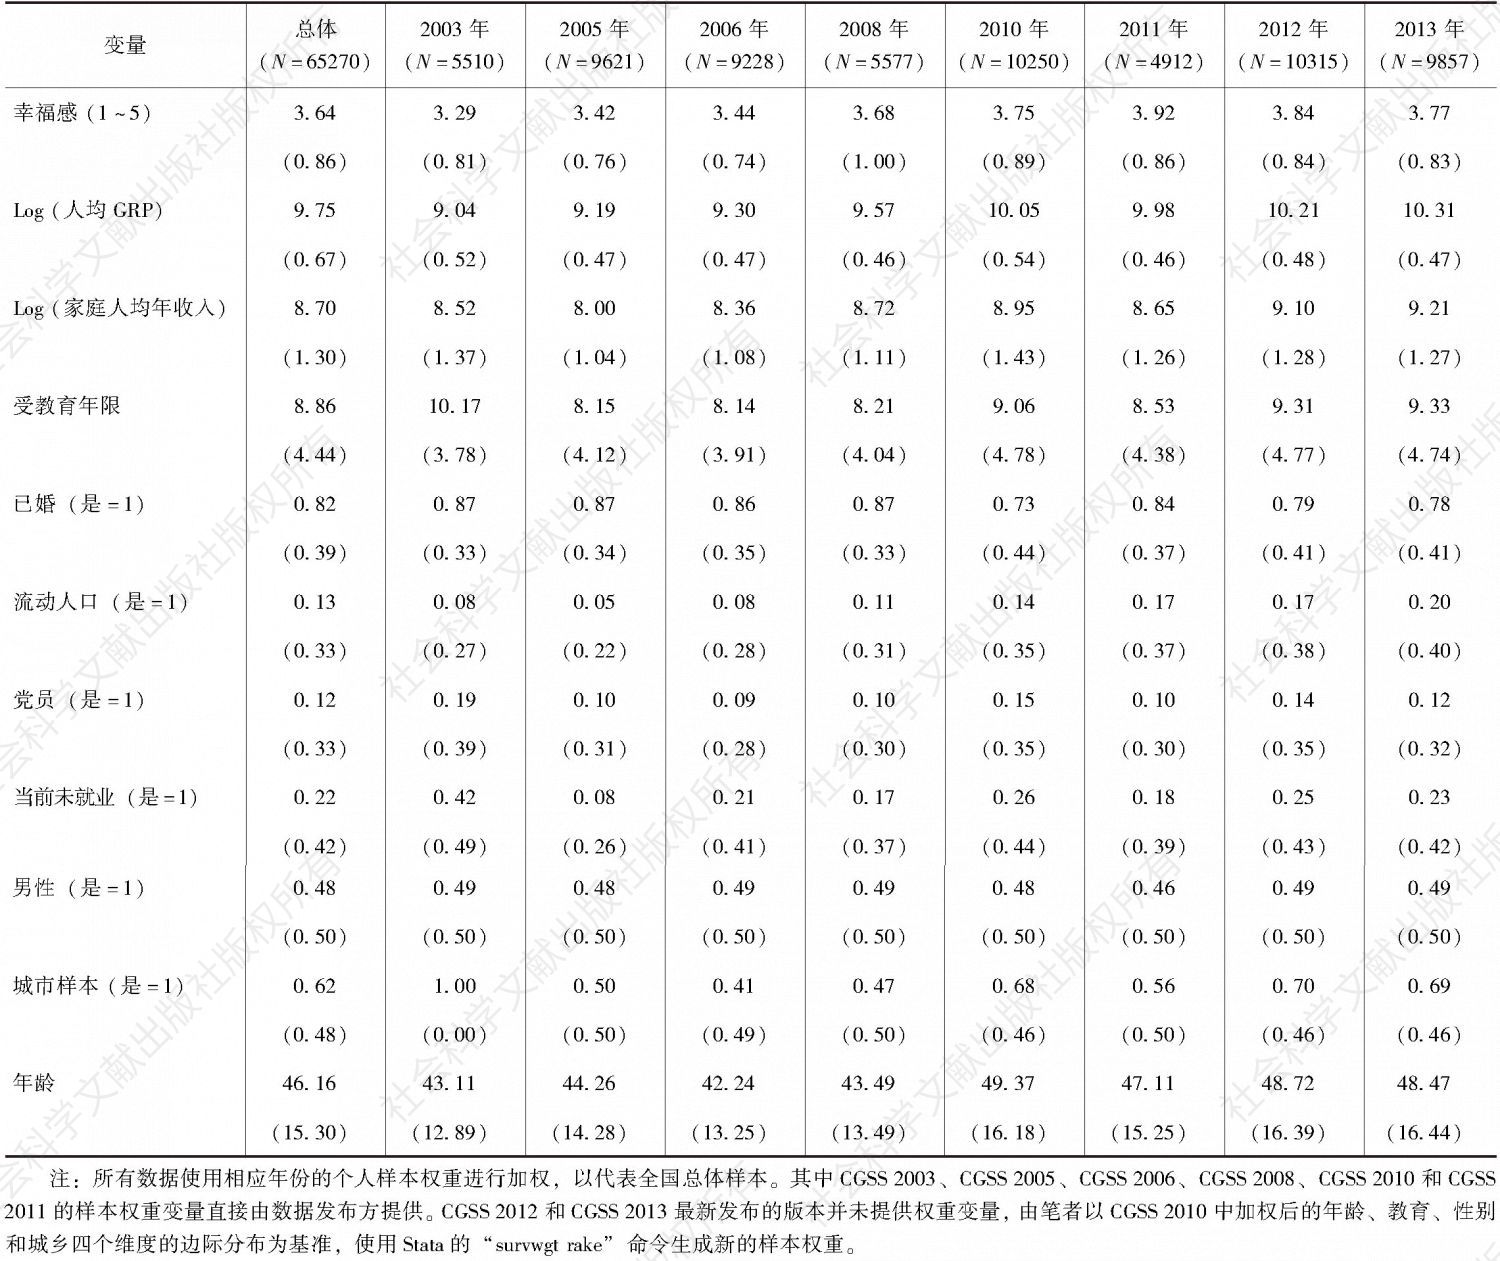 表2-1 单变量描述统计（CGSS2003～2013）